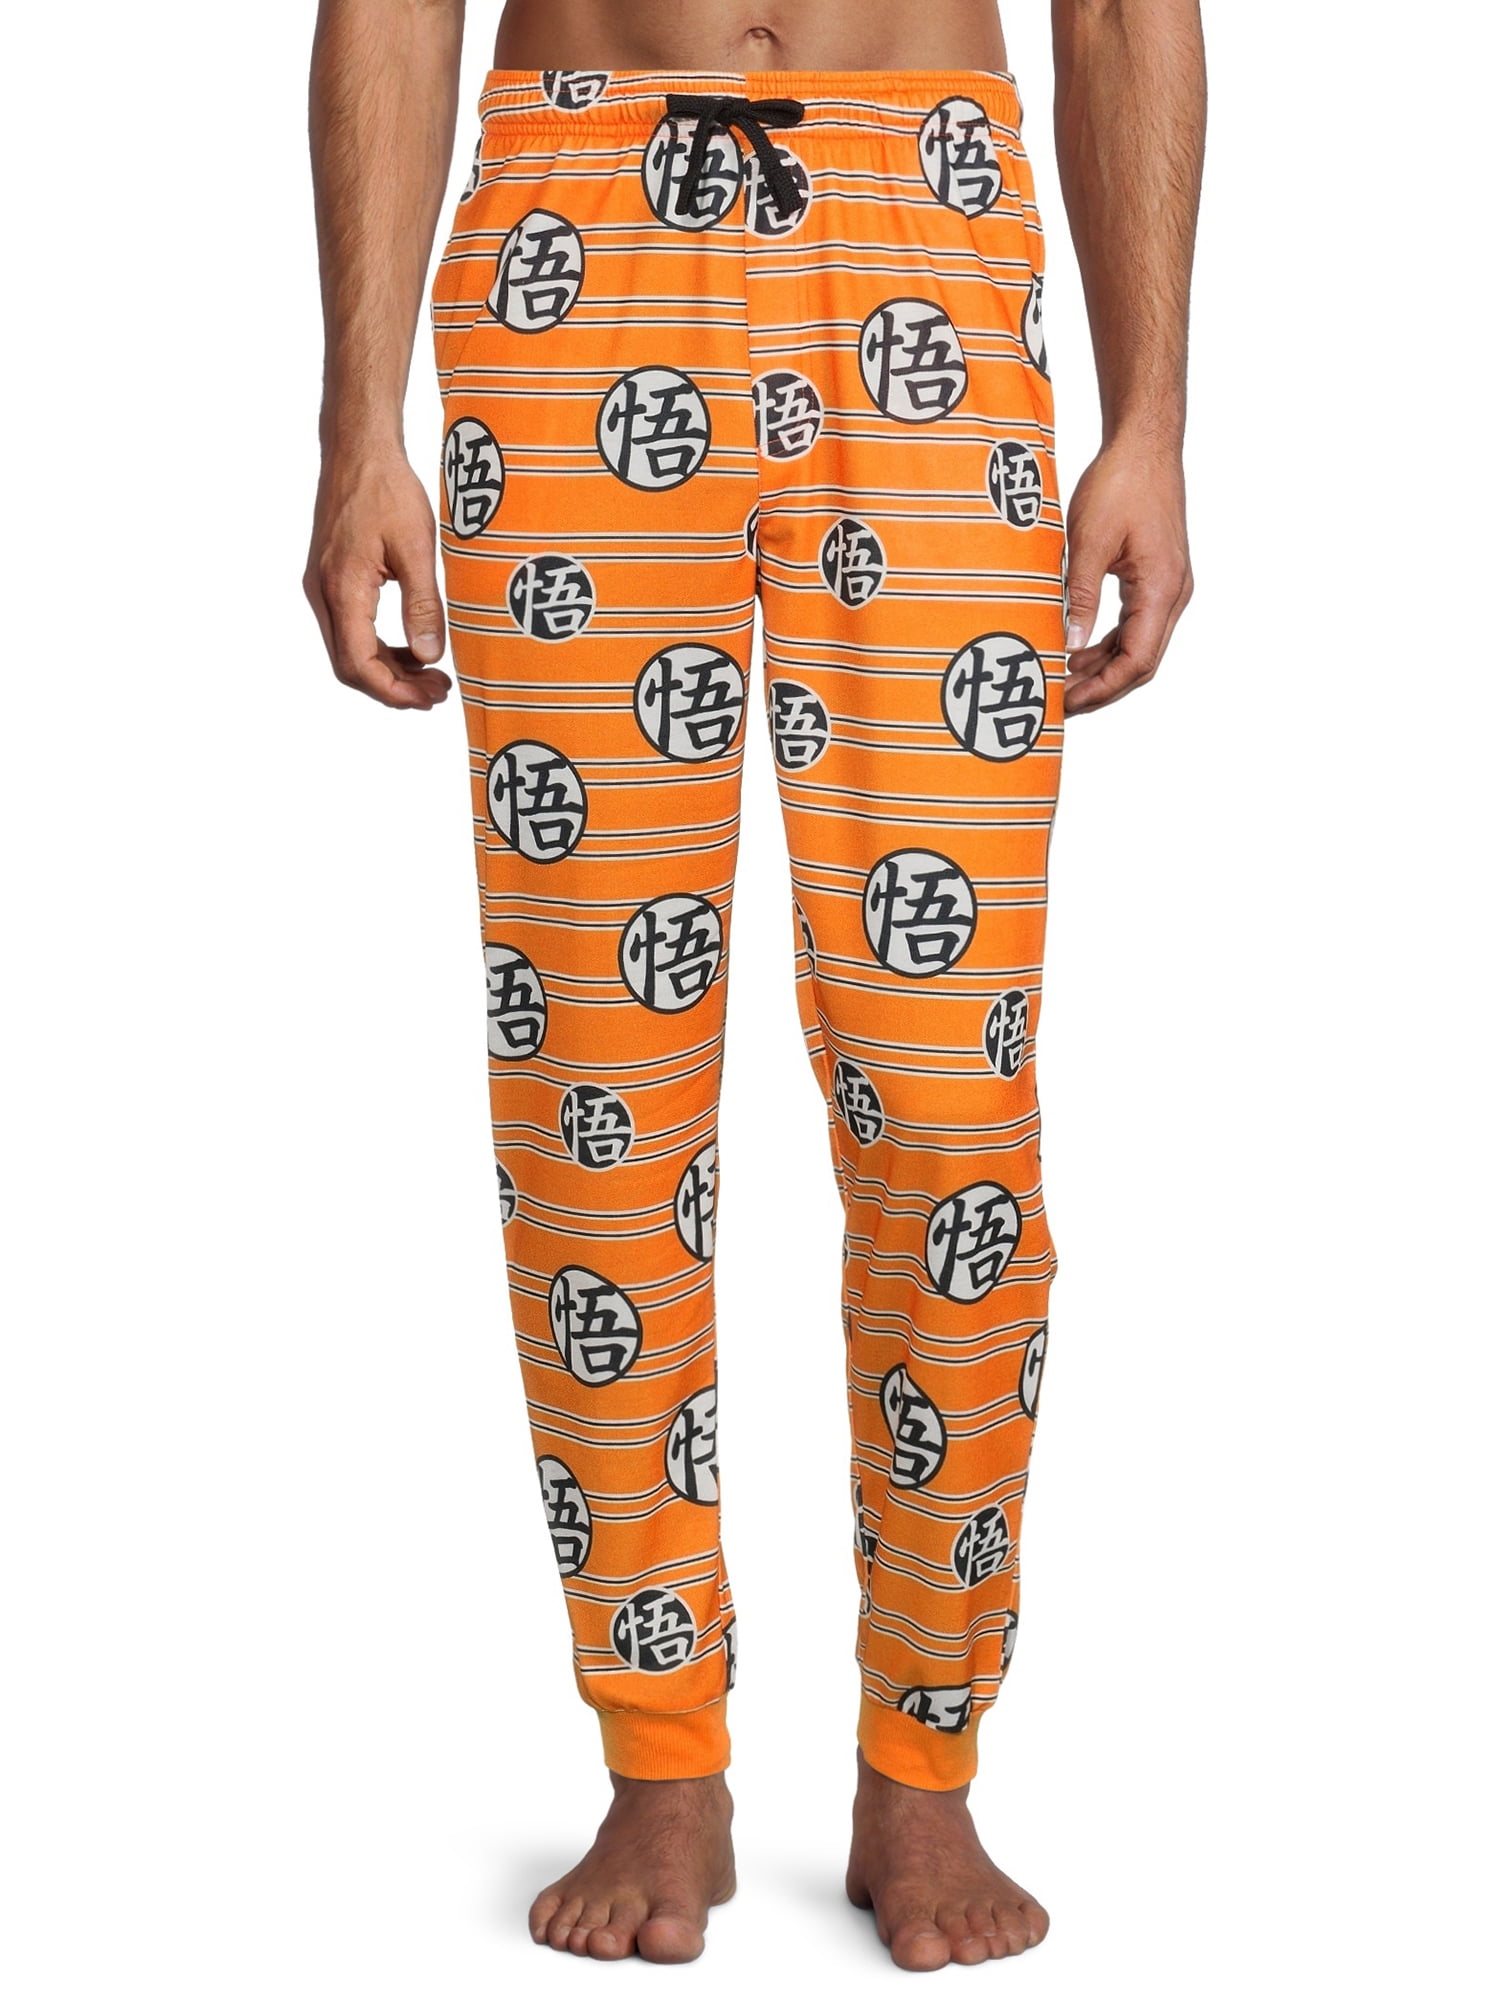 Dragon Ball Z Men's Sleep Pants, Size S-2XL